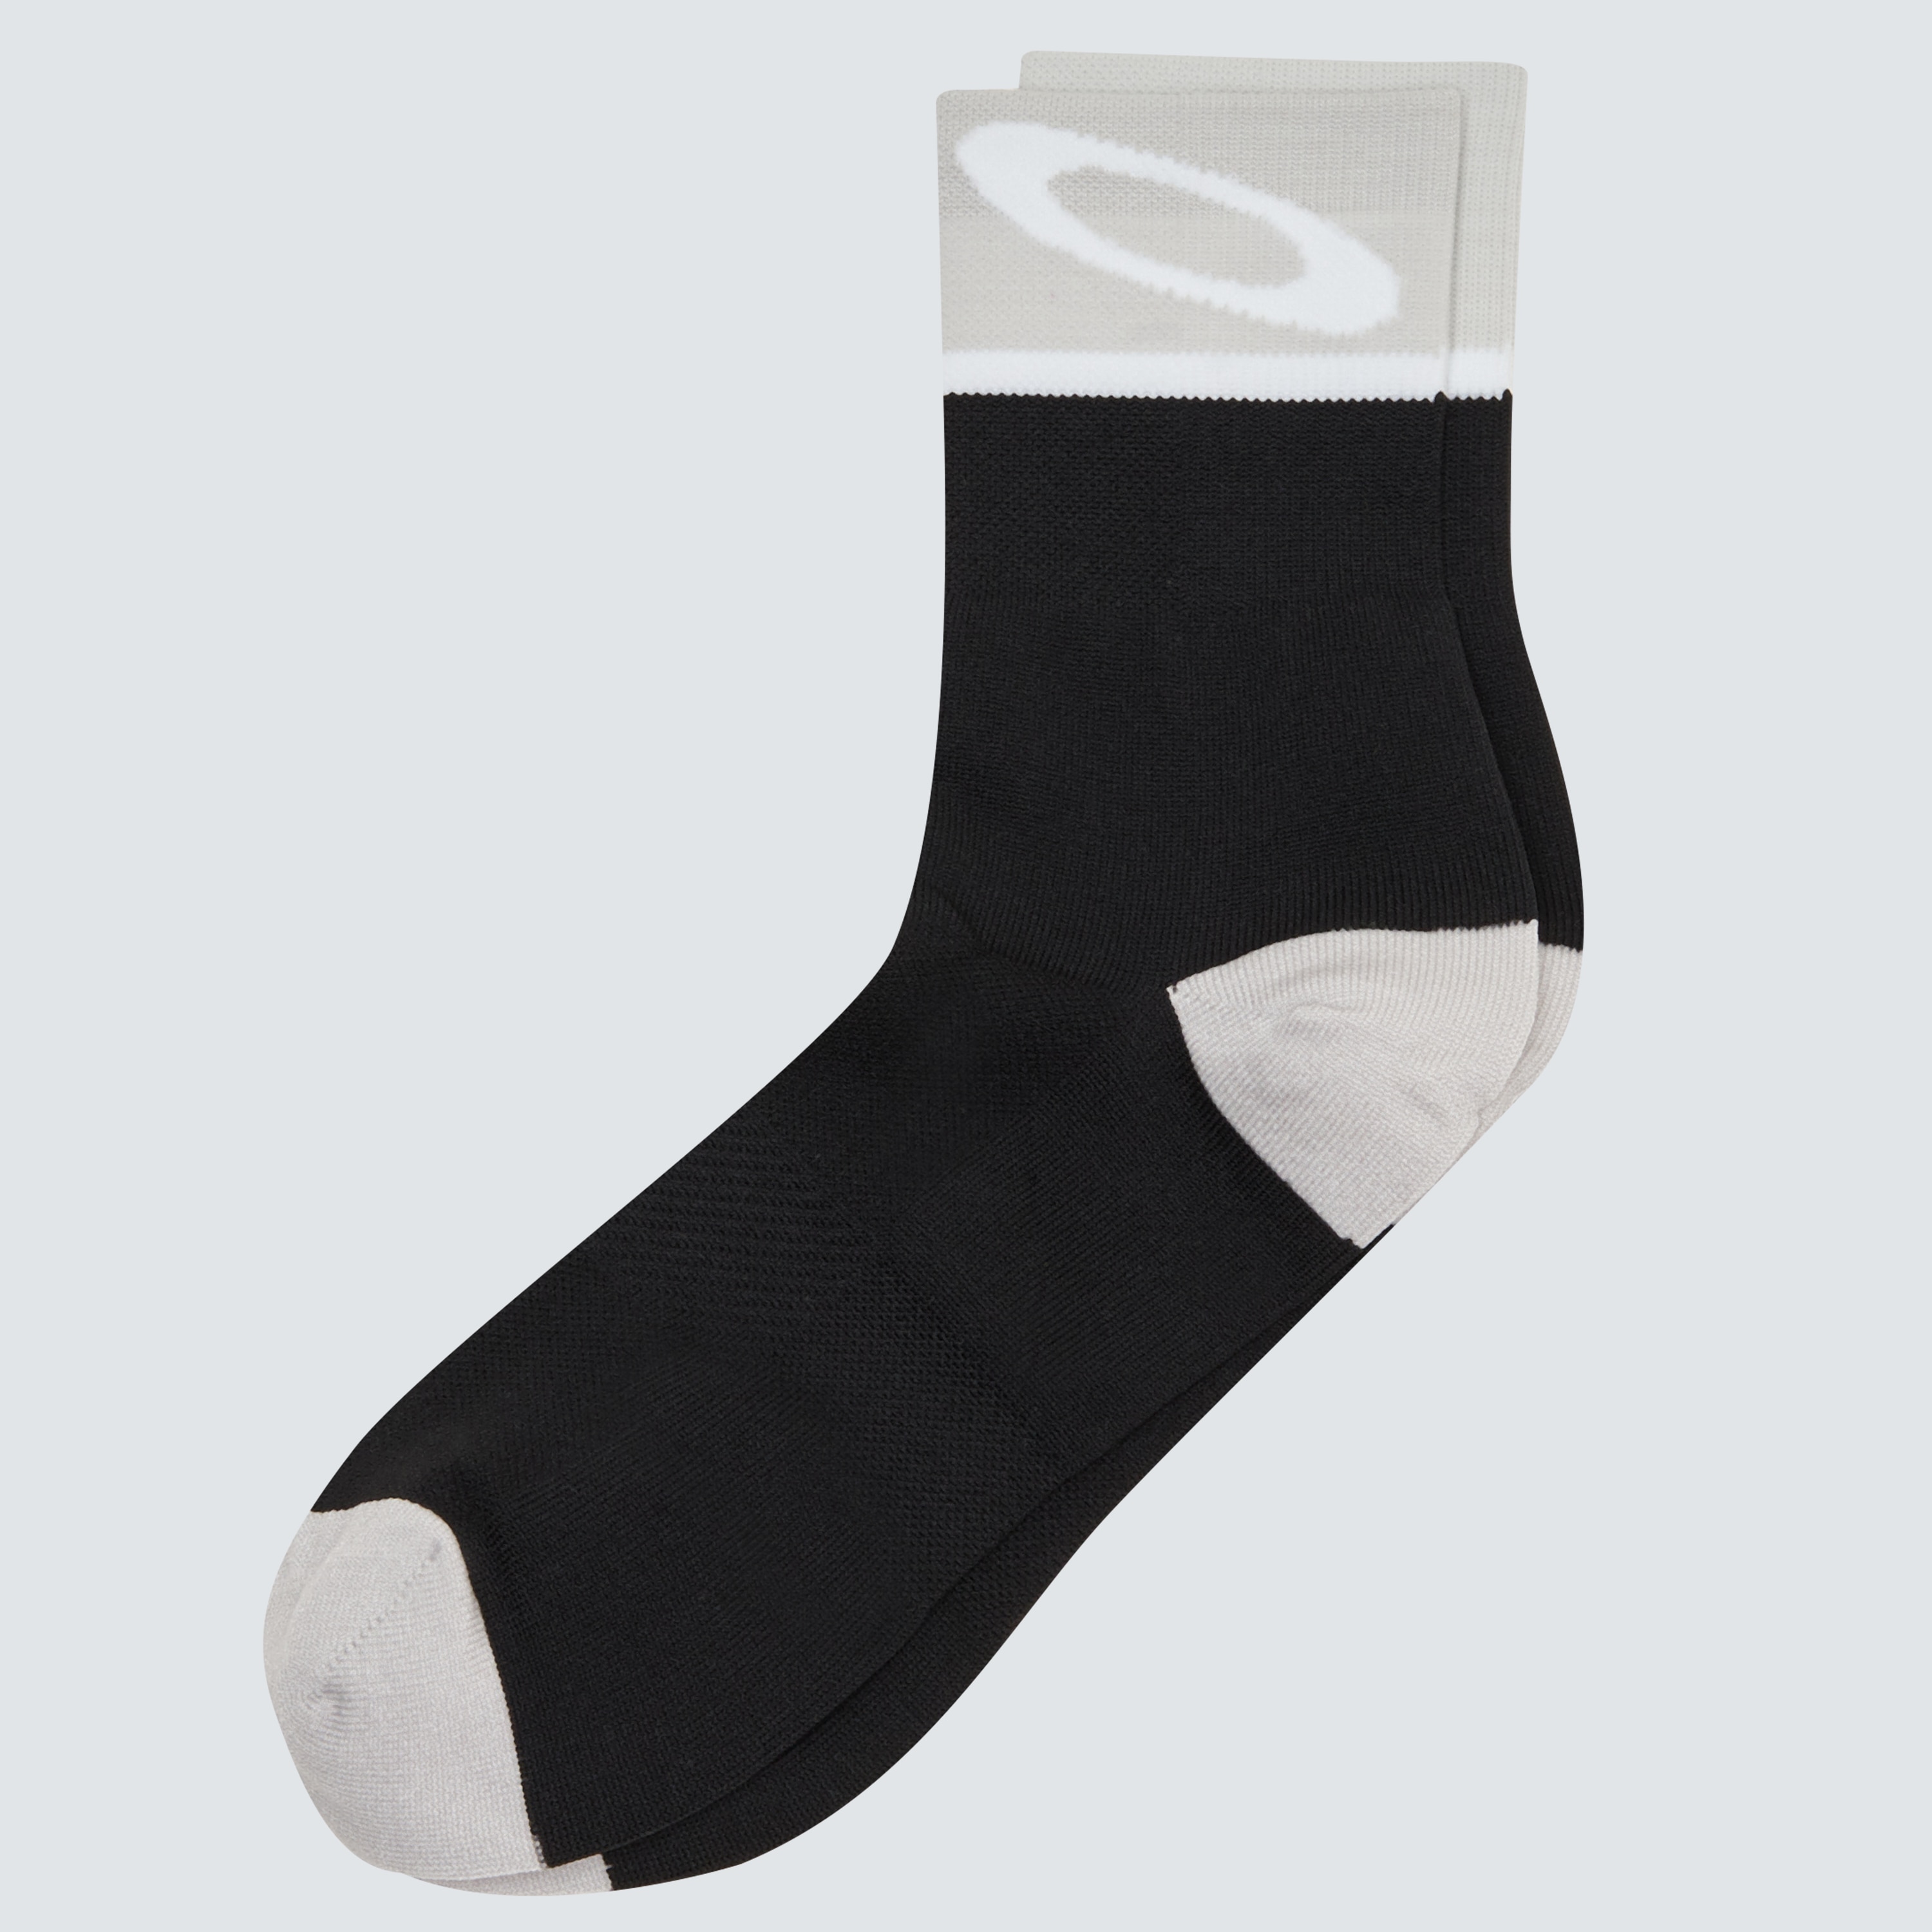 Oakley Socks 3.0 - Blackout - FOS900165 